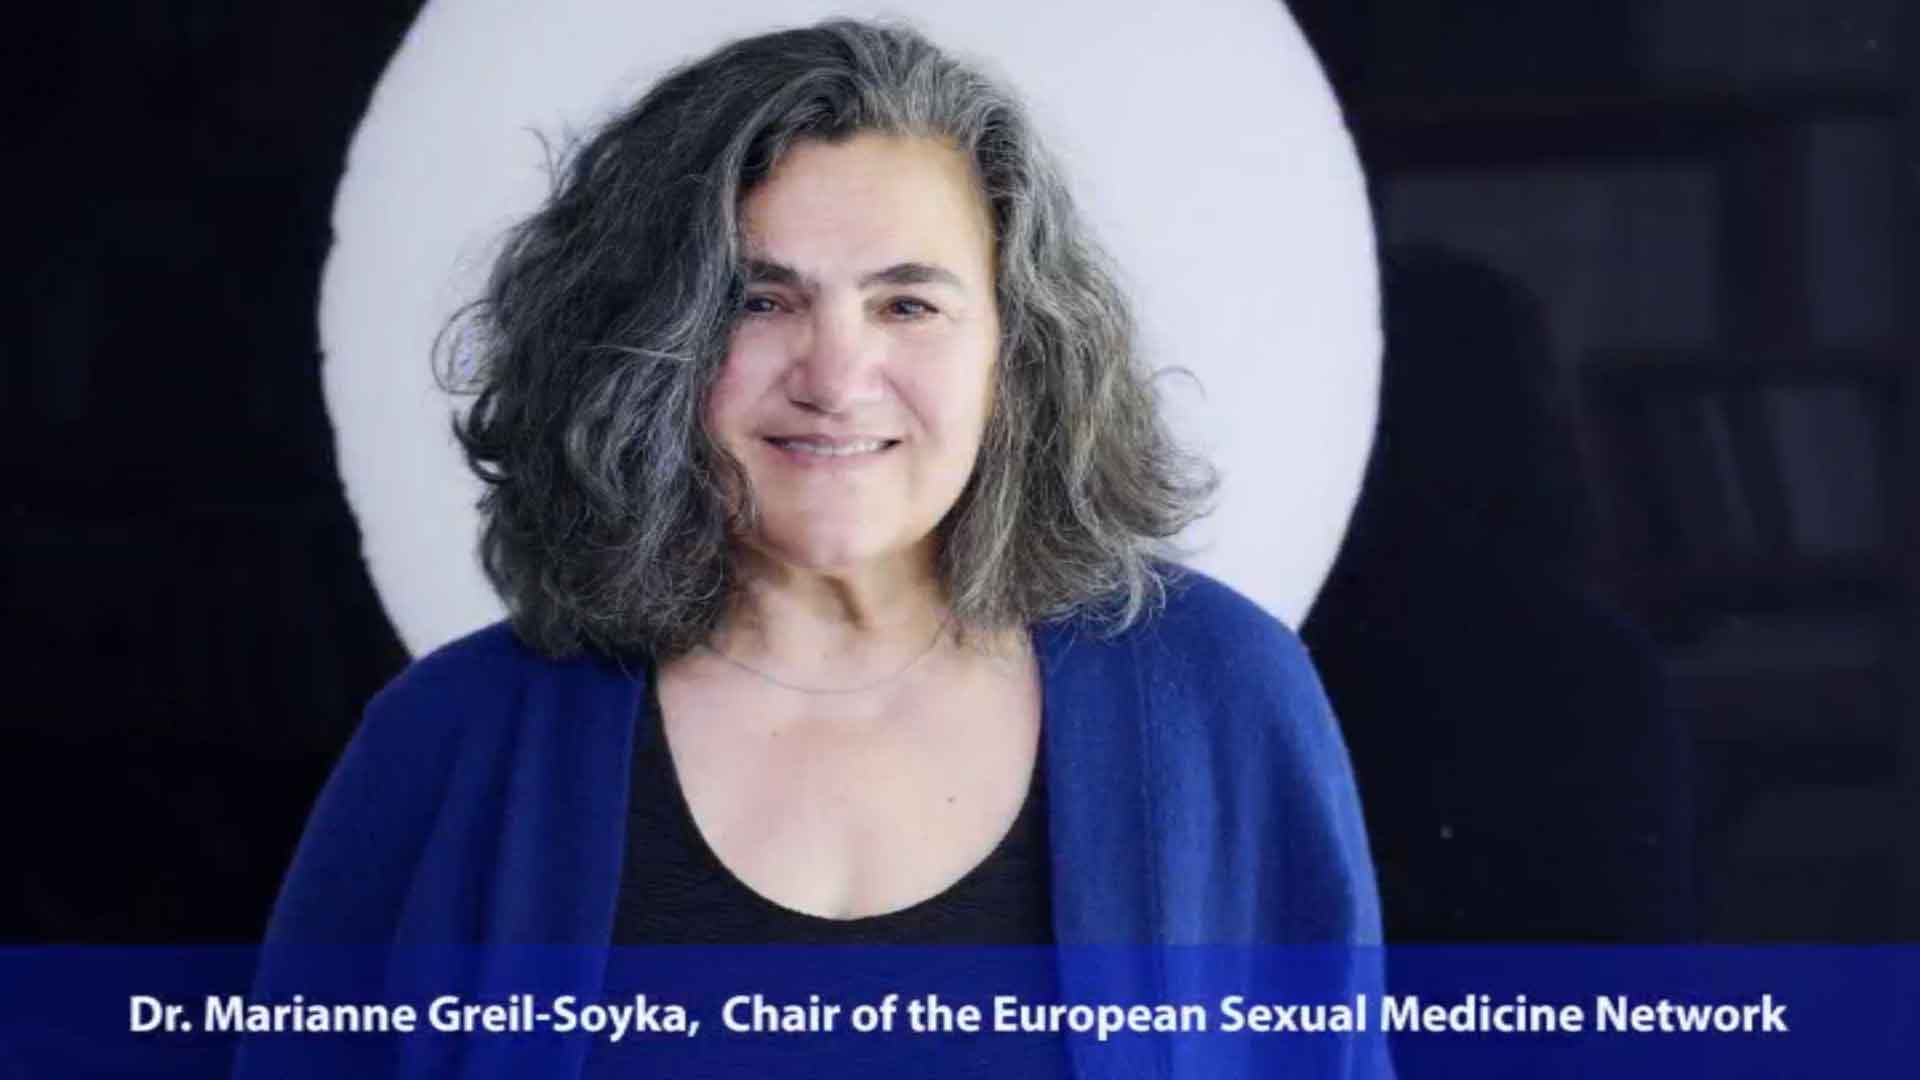 European Sexual Medicine Network: Cùng khám phá lĩnh vực tình dục và y học sinh lý thú vị với European Sexual Medicine Network. Tạp chí của họ sẽ giúp bạn cập nhật các tin tức mới nhất trong lĩnh vực này và giữ cho bạn luôn luôn năng động và tươi trẻ.